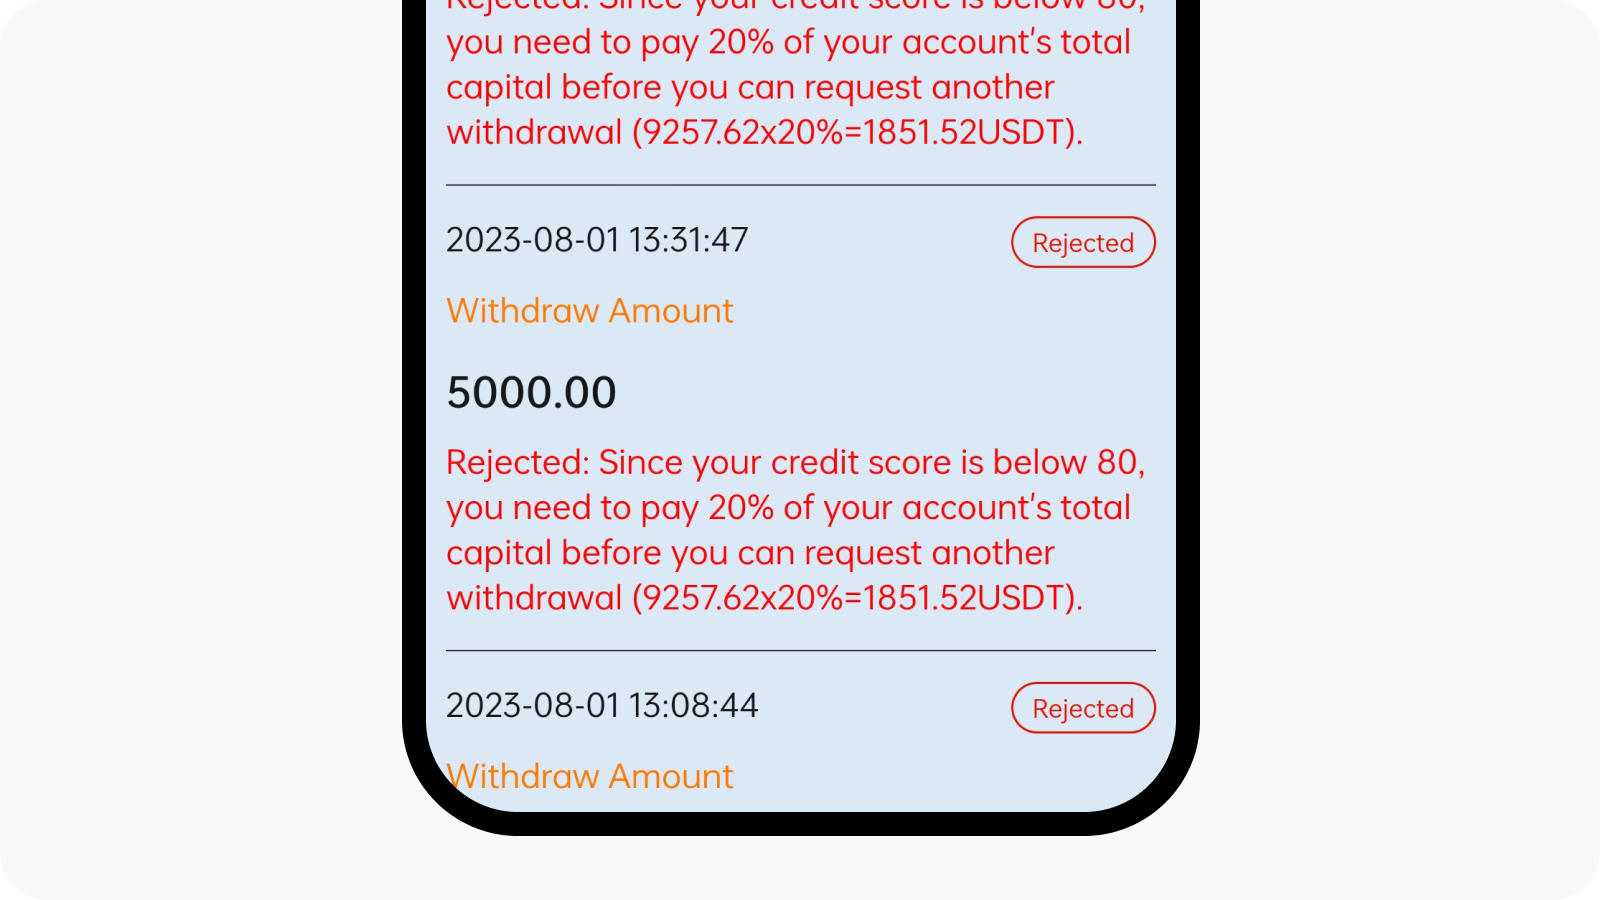 CT-App-Überweisung von Geldern an betrügerische Plattformen